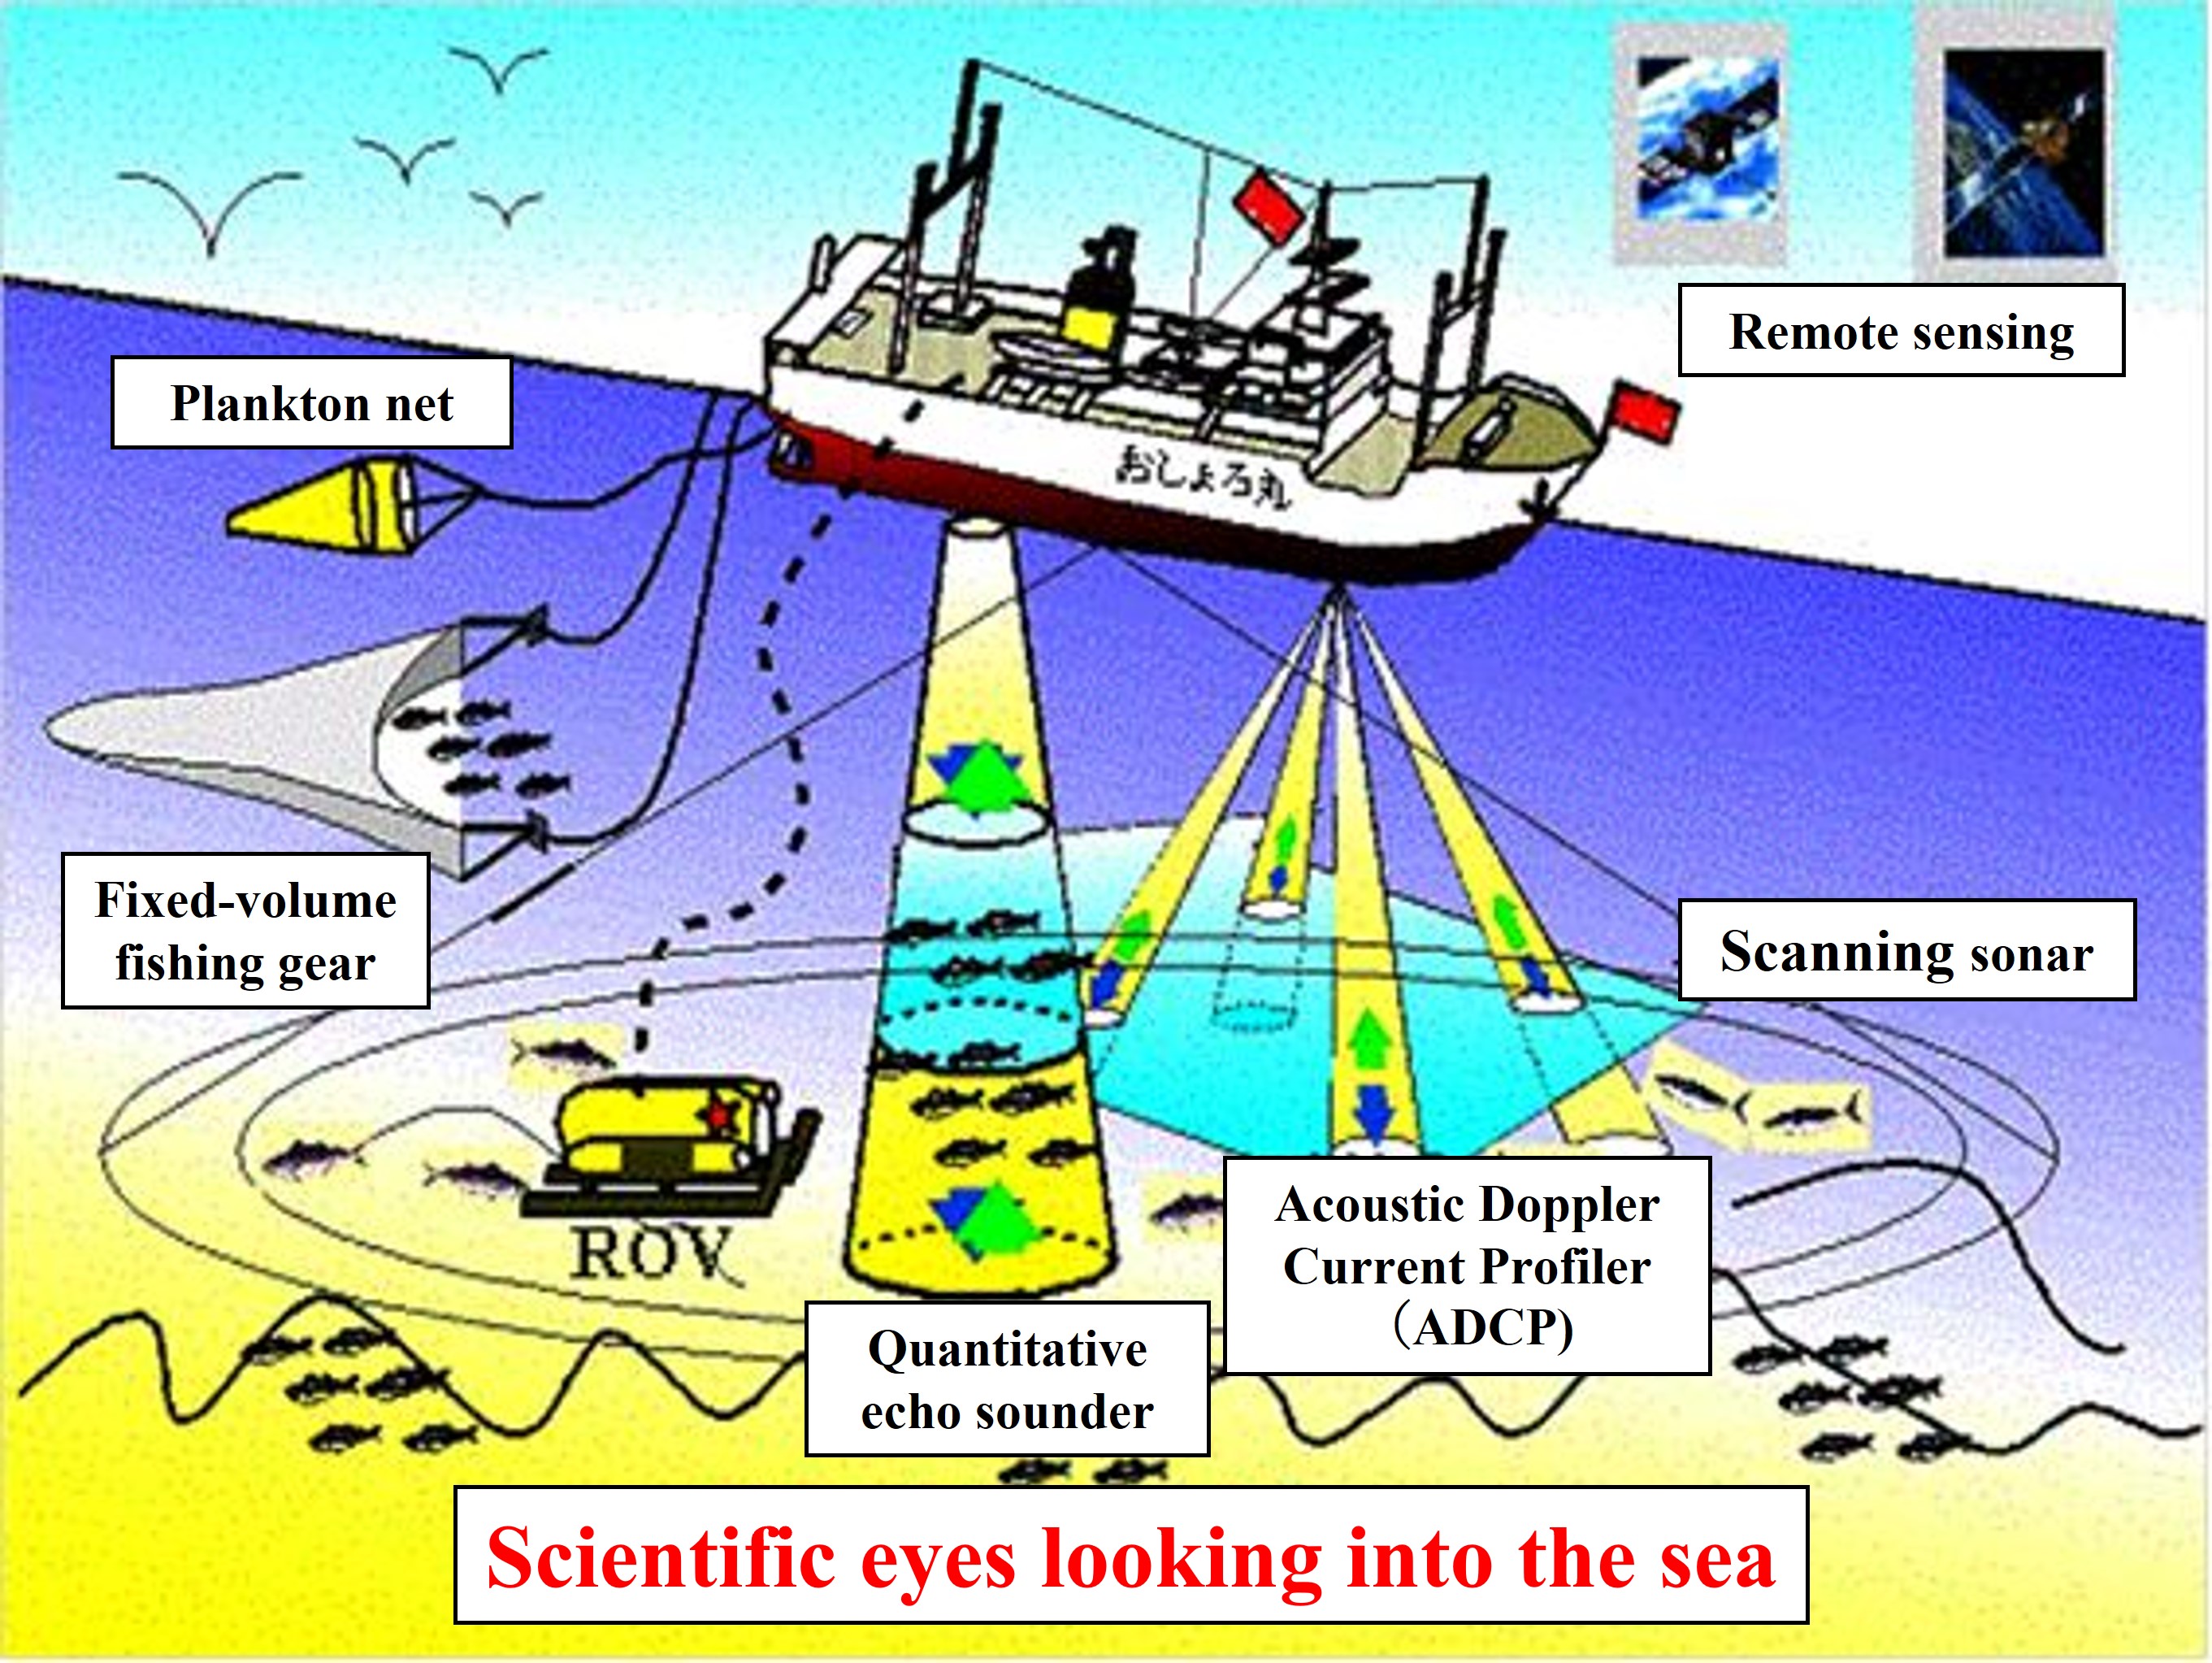 Scientific eyes looking into the sea